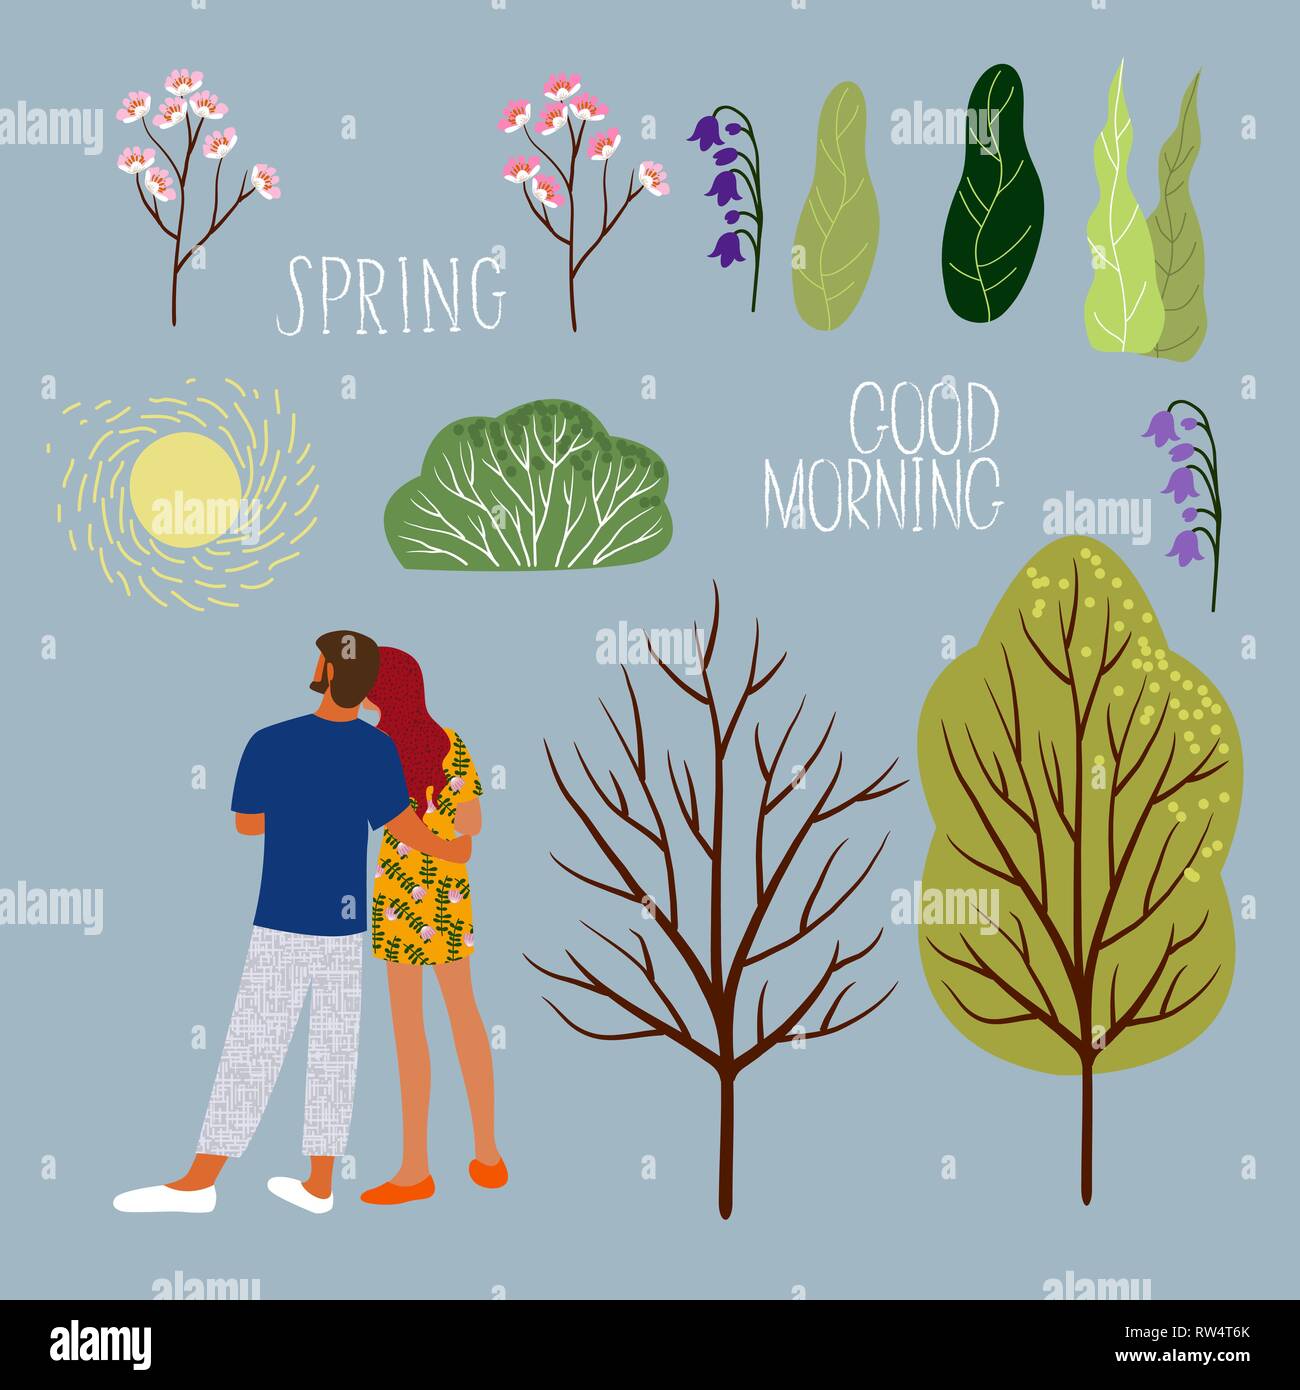 Paar im Frühjahr morgen, Deine Karte zu erstellen. Eingestellt von isolierten Vektor Elemente, Mann und Frau, Sonne, Bäume, Blumen und Blätter. Stock Vektor